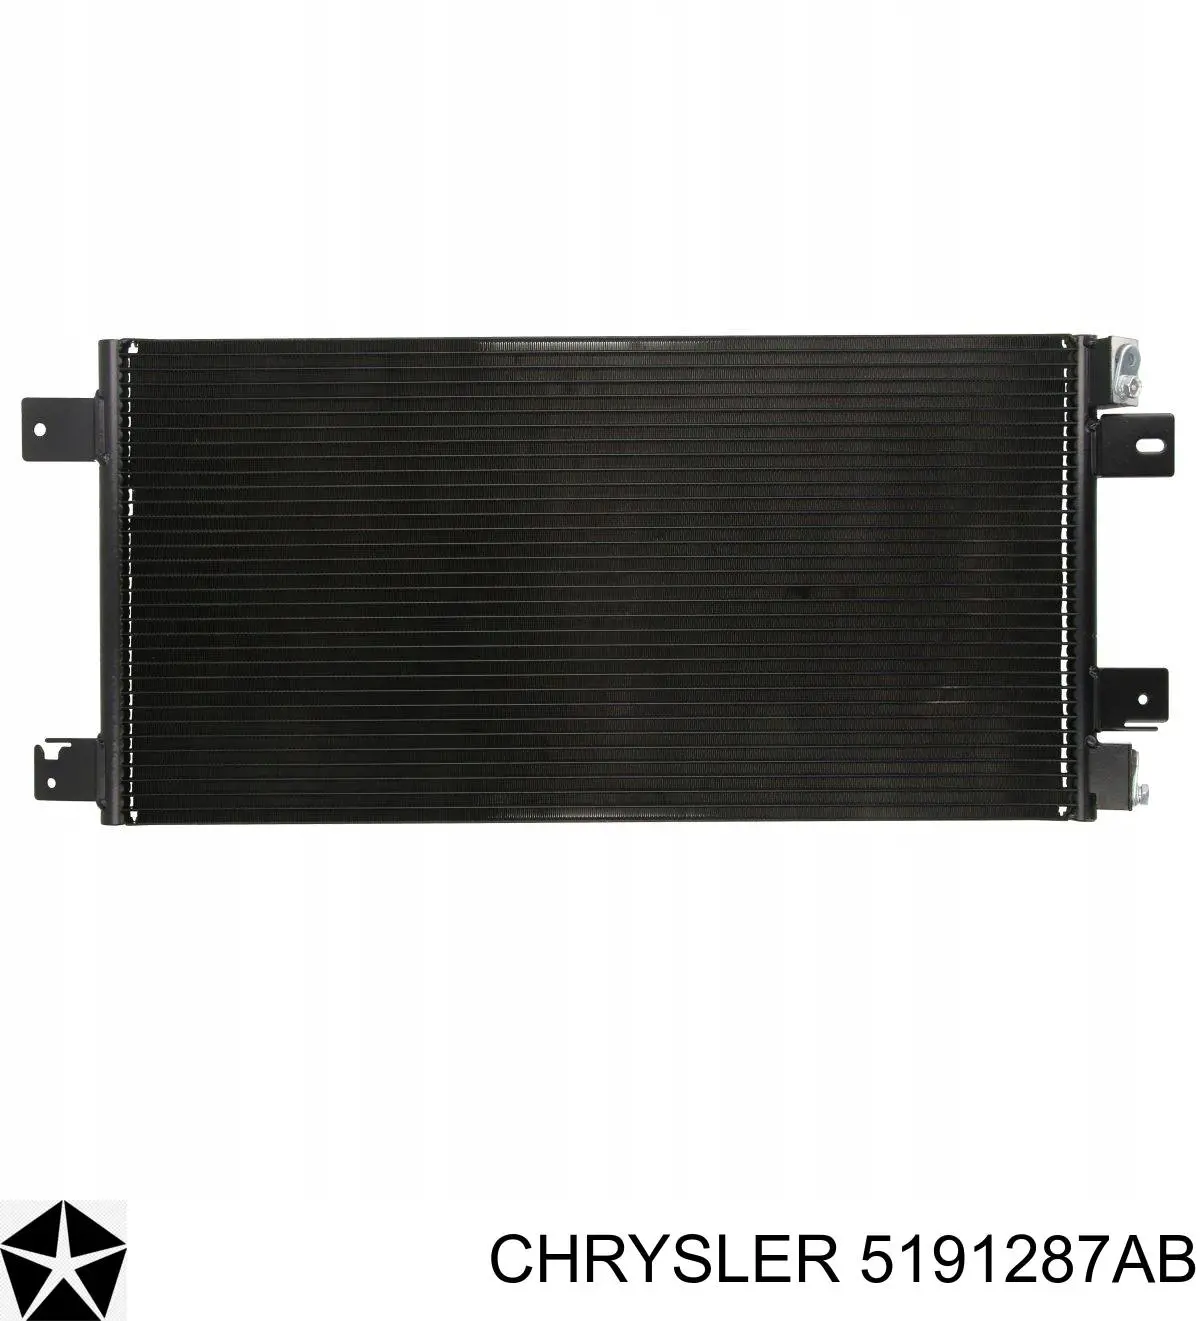 5191287AB Chrysler radiador de aparelho de ar condicionado